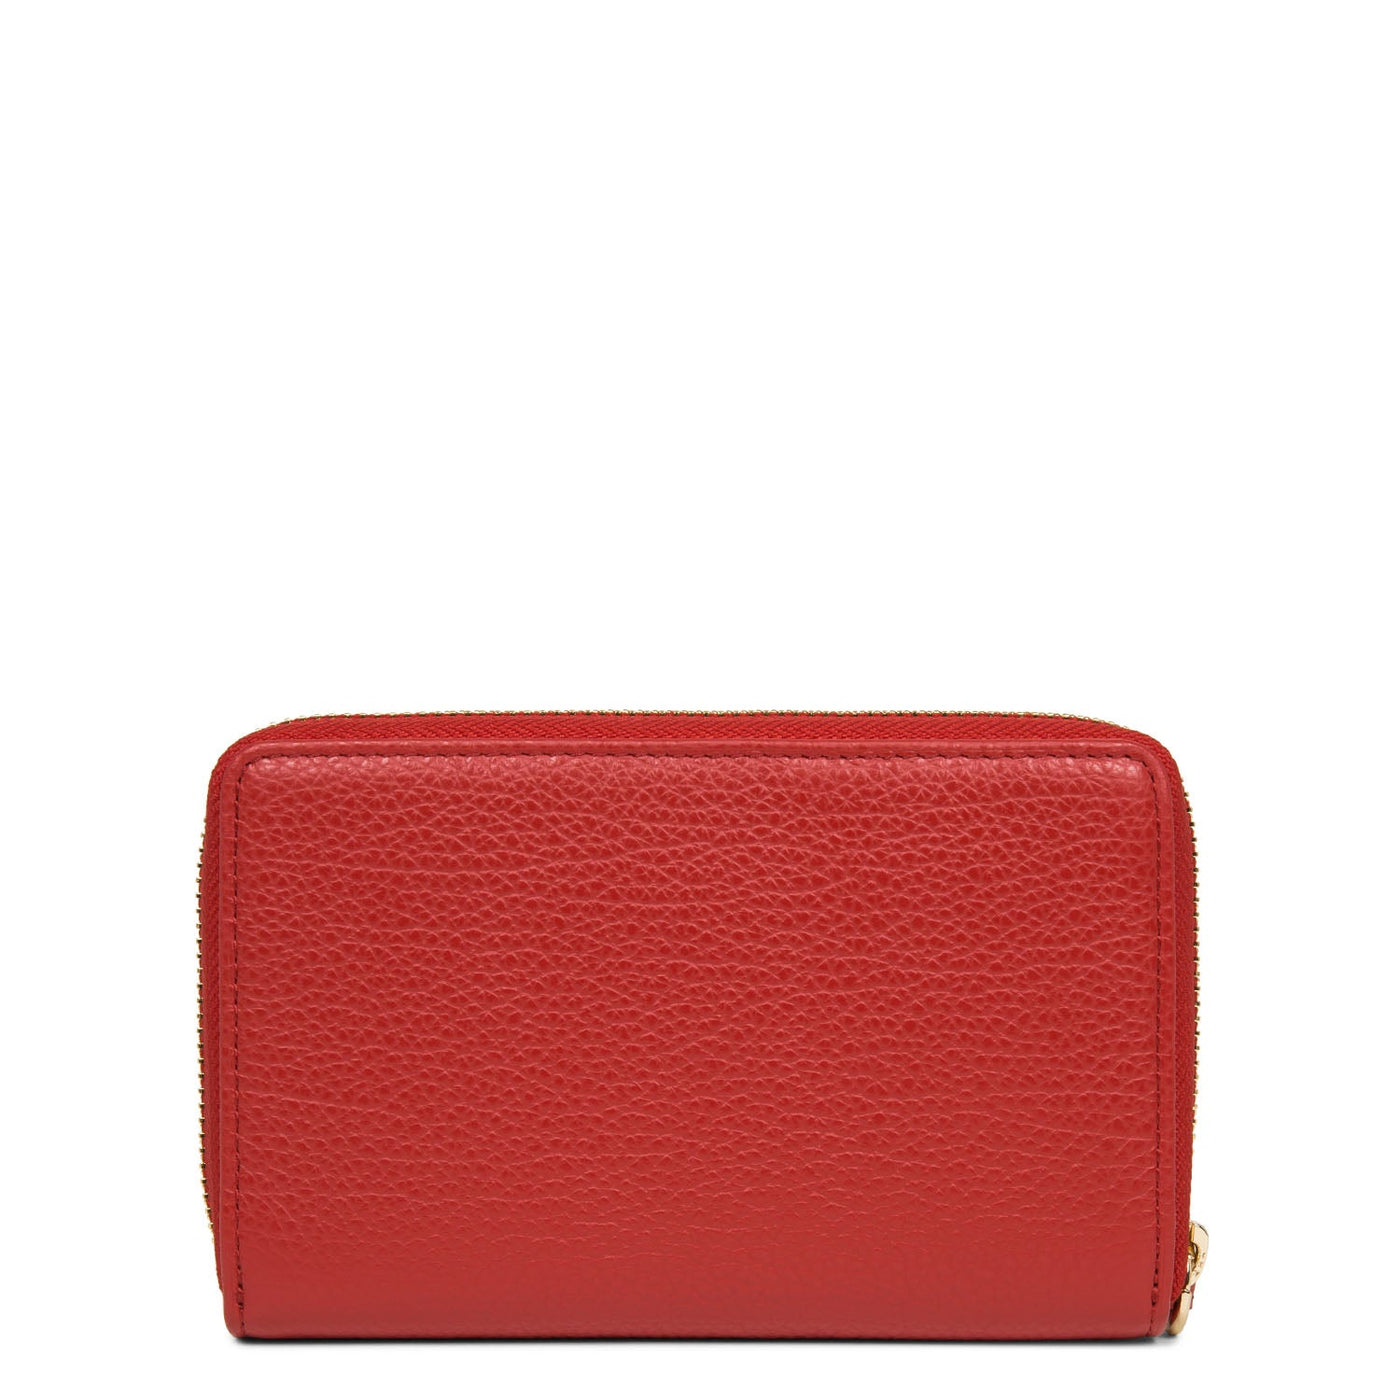 organizer wallet - dune #couleur_rouge